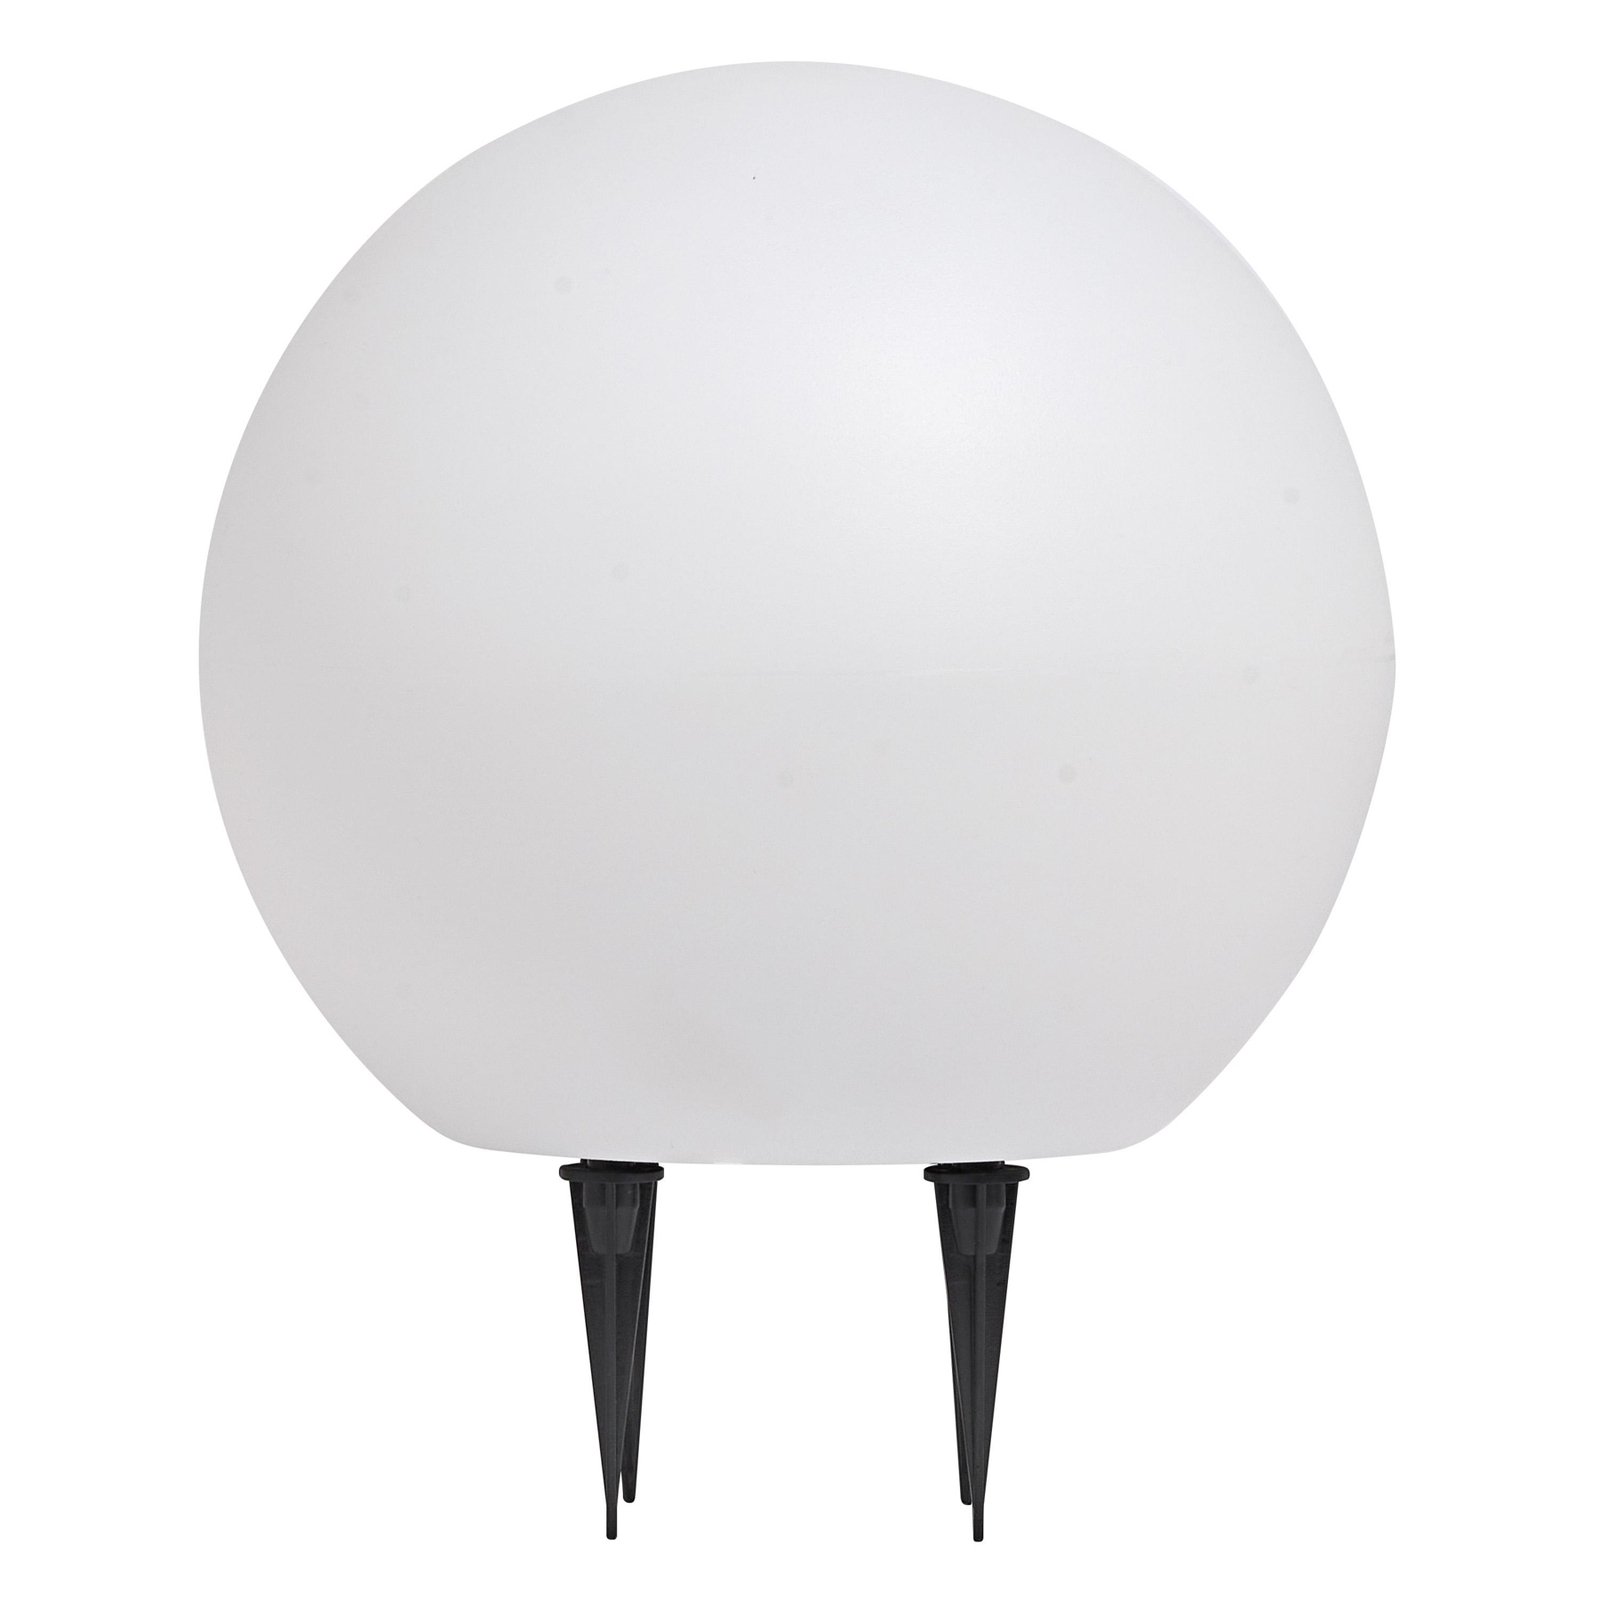 LEDVANCE Lampada con picchetto a terra Endura Hybrid Ball 2W, bianco